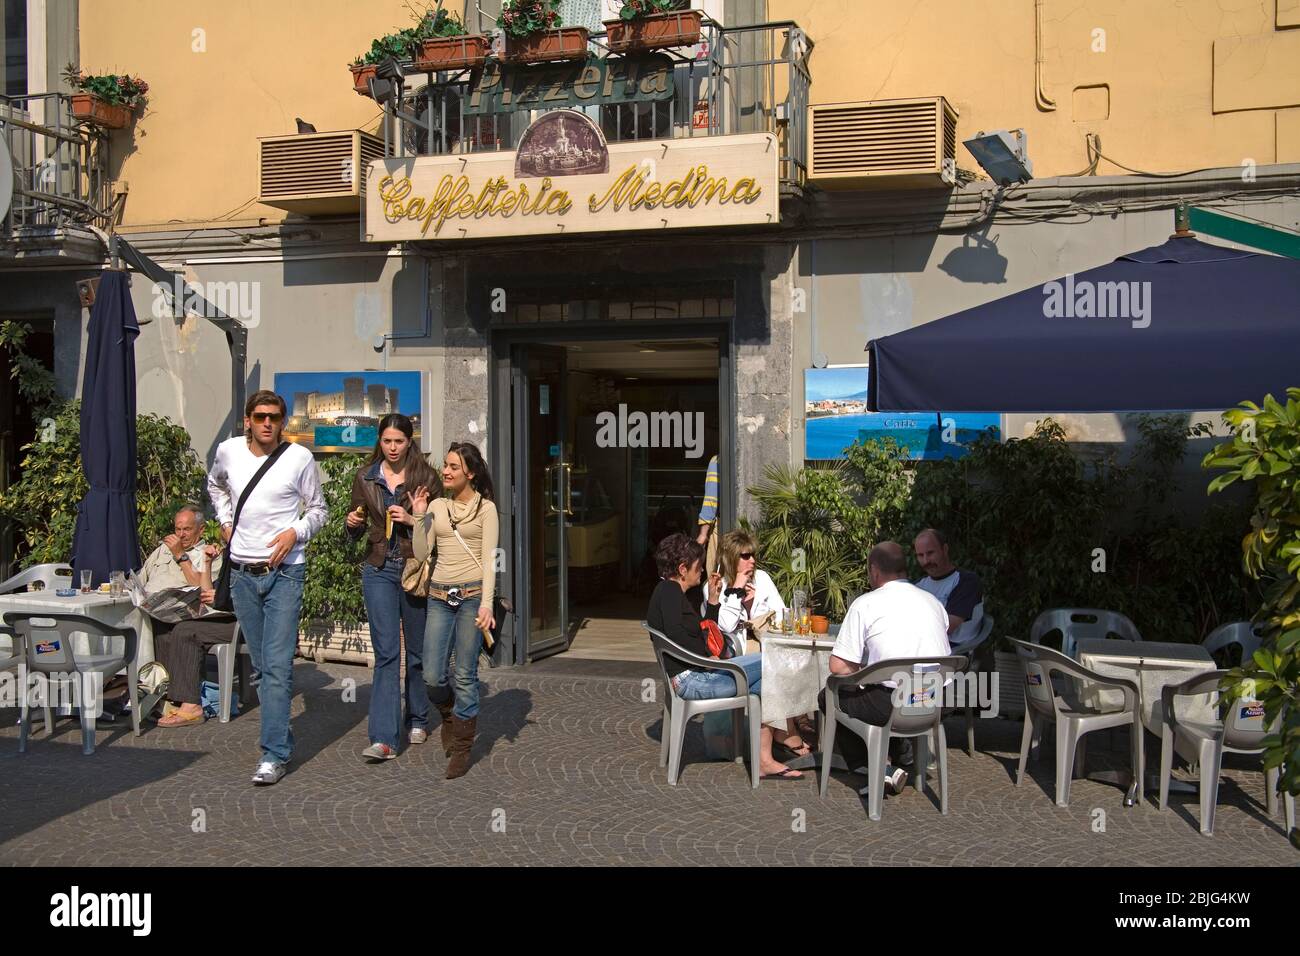 Ristorante in Via Medina, città di Napoli, Italia Foto Stock